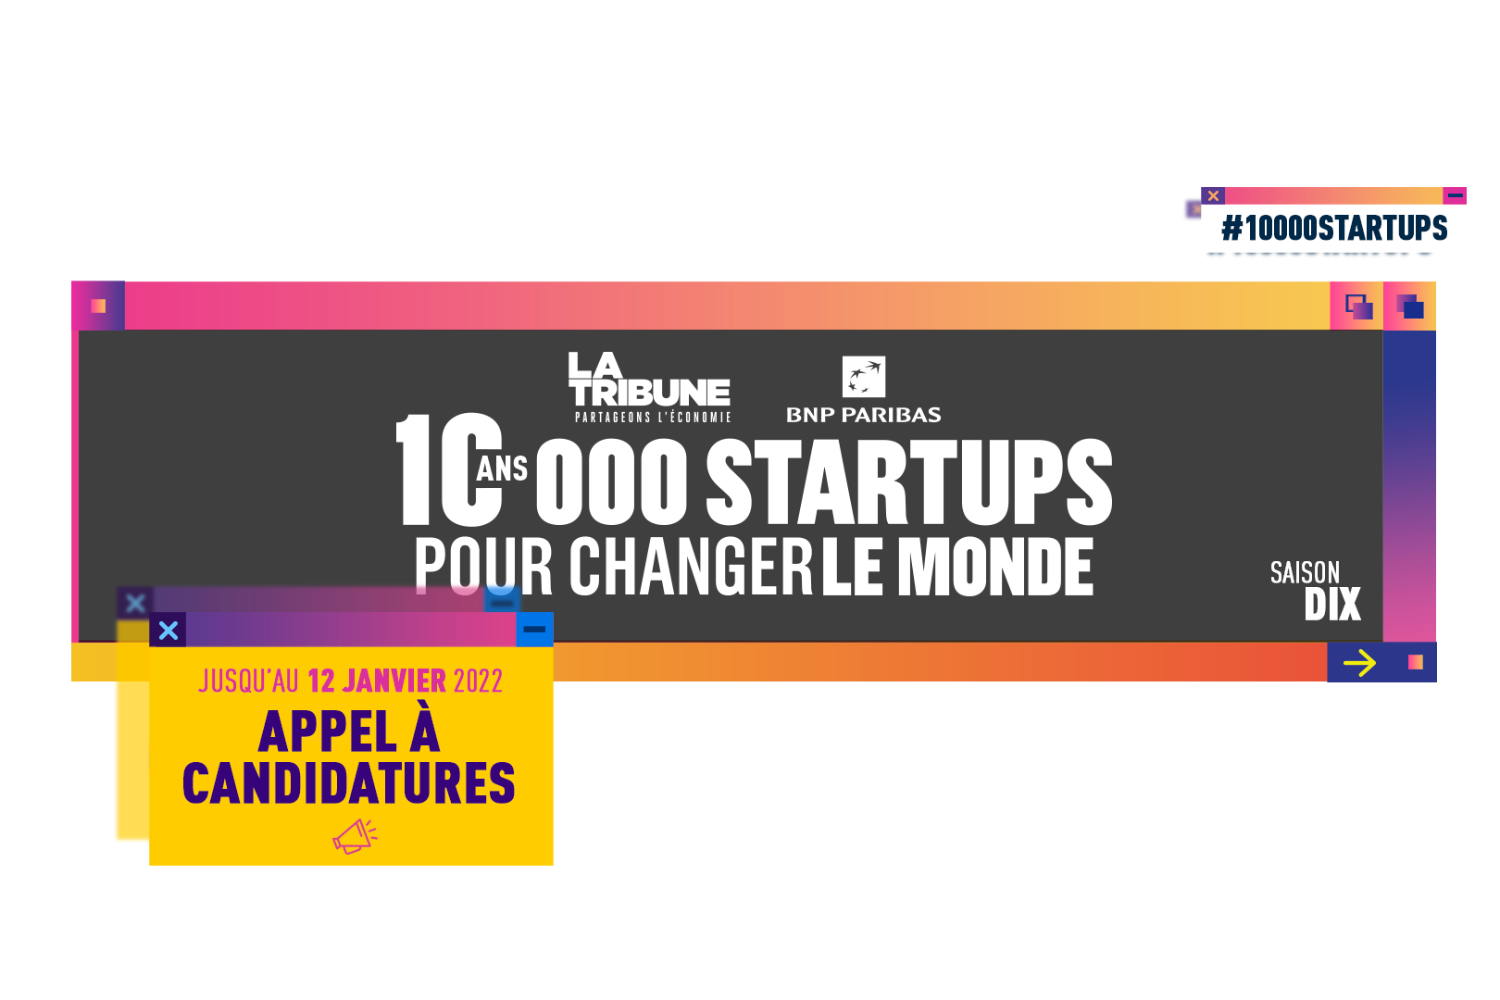 La Tribune - 10'000 startups pour changer le monde 